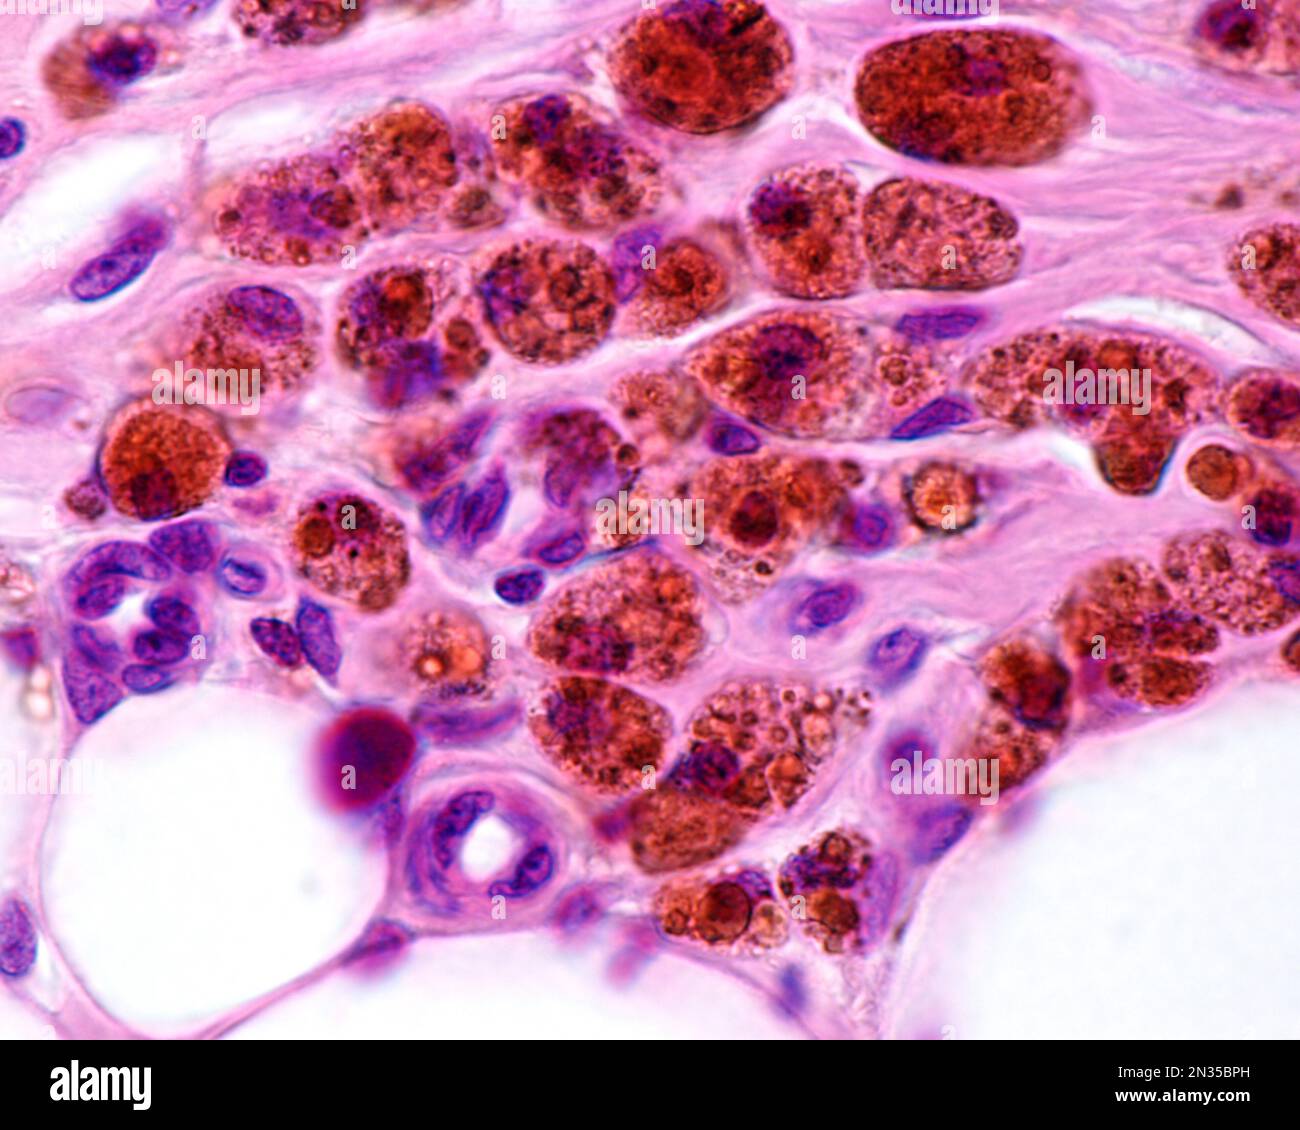 Macrophages fortement marqués avec du fer colloïdal. Le fer colloïdal peut être utilisé comme coloration vitale pour marquer les macrophages. Le fer colloïdal circulant est phago Banque D'Images